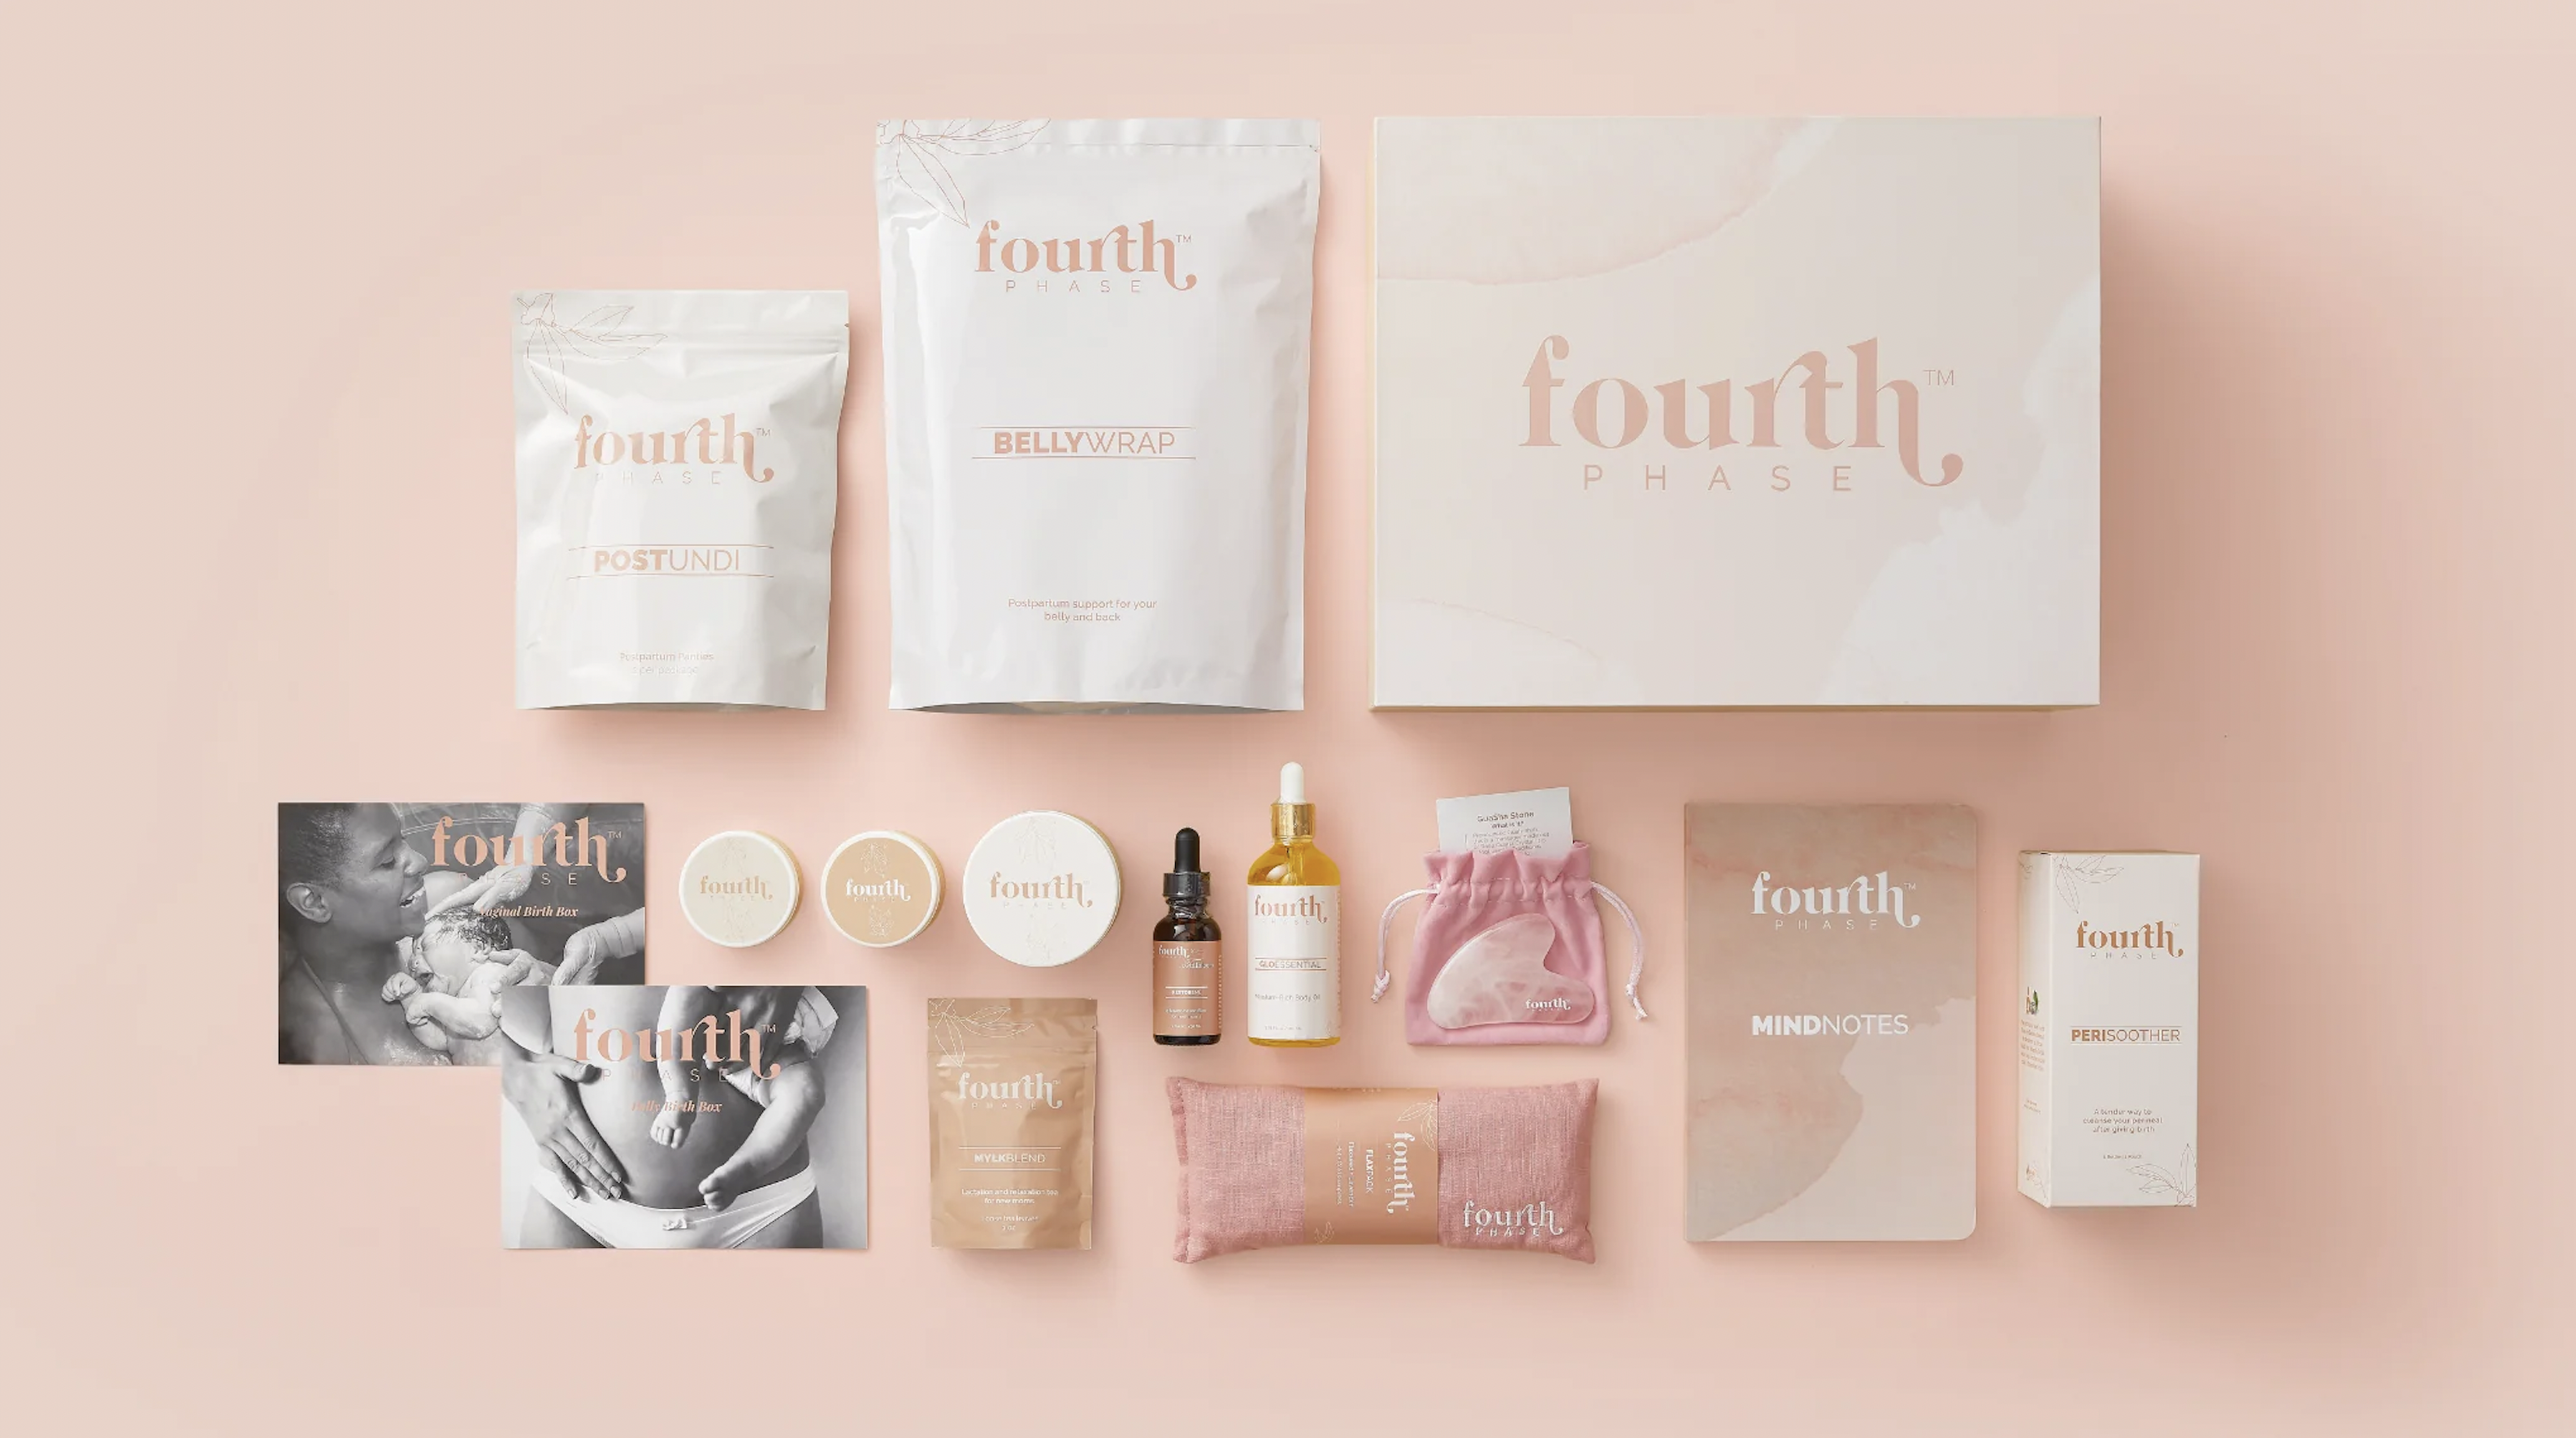 The Honest Company New Mama Care Essentials Gift Set 1 Set